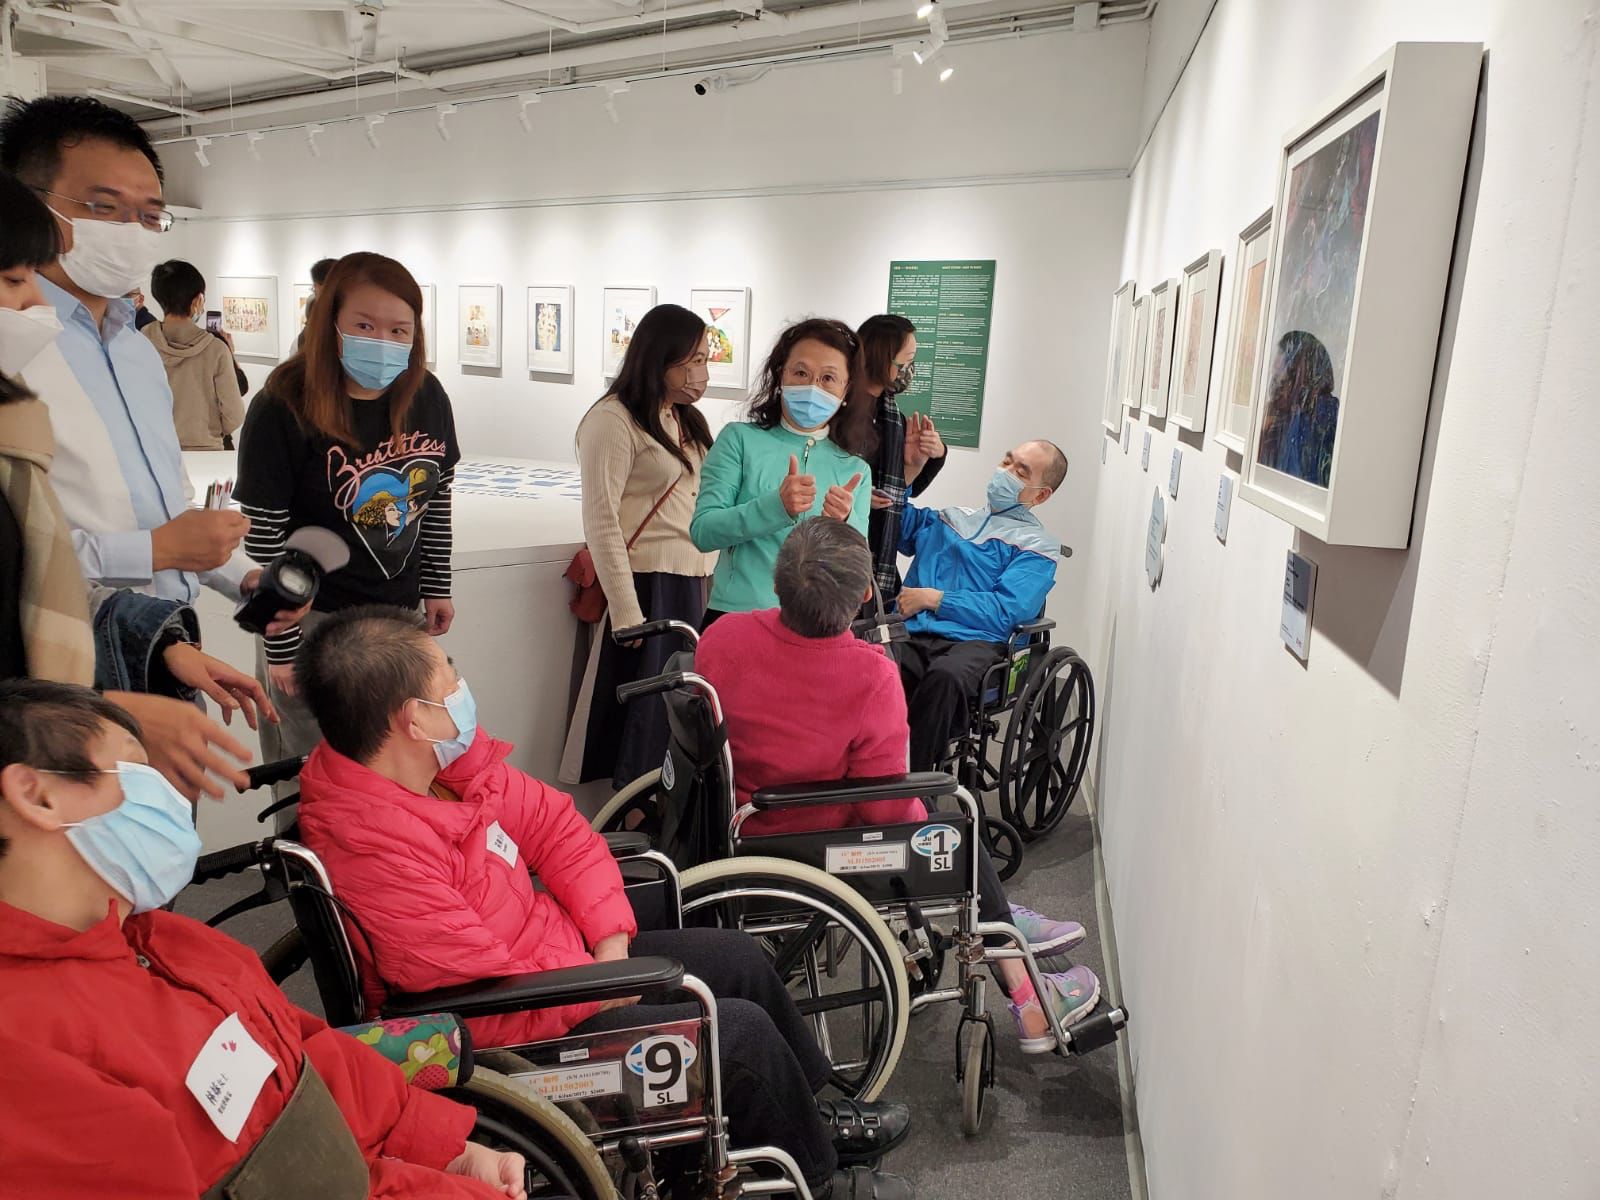 本會董事局主席林小玲女士, MH及殘疾藝術家的家屬亦到場支持